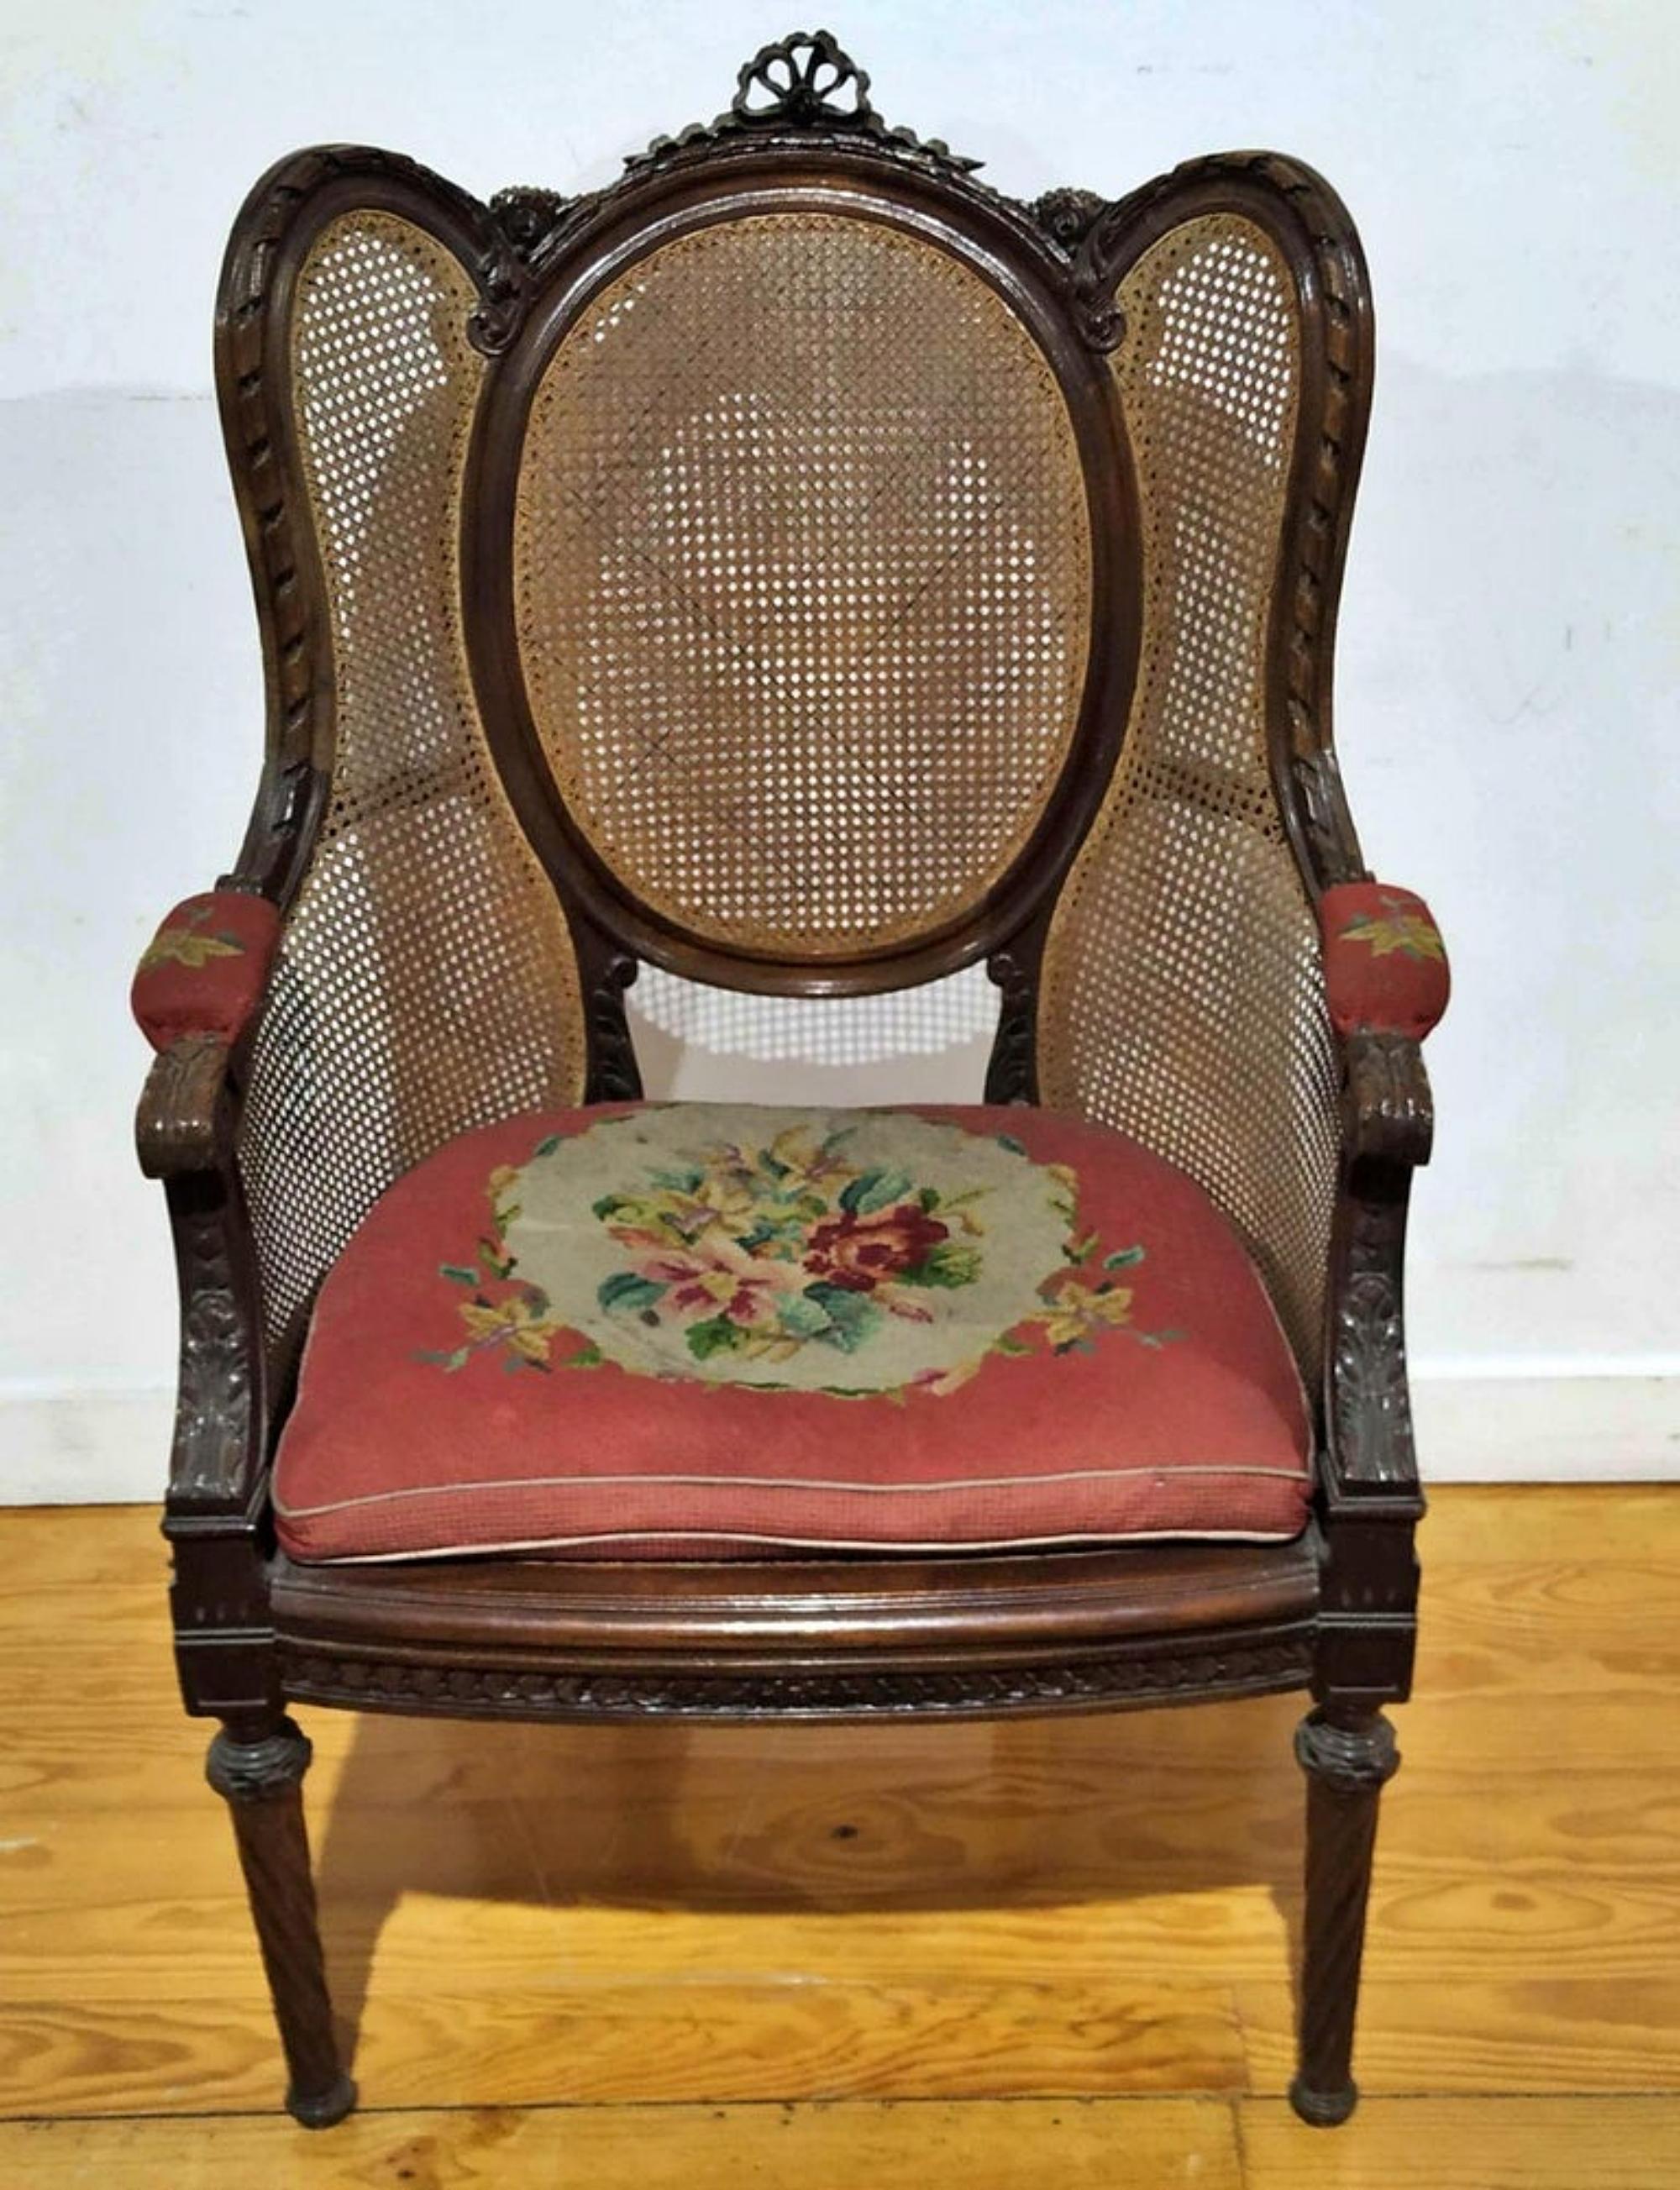 CHAISE PORTUGAISE STYLE LOUIS XV 19ème siècle

en bois d'acajou sièges, accoudoirs et dossier en paille.
Petits défauts.
Dim. : 113 x 66 x 60 cm.
bonnes conditions